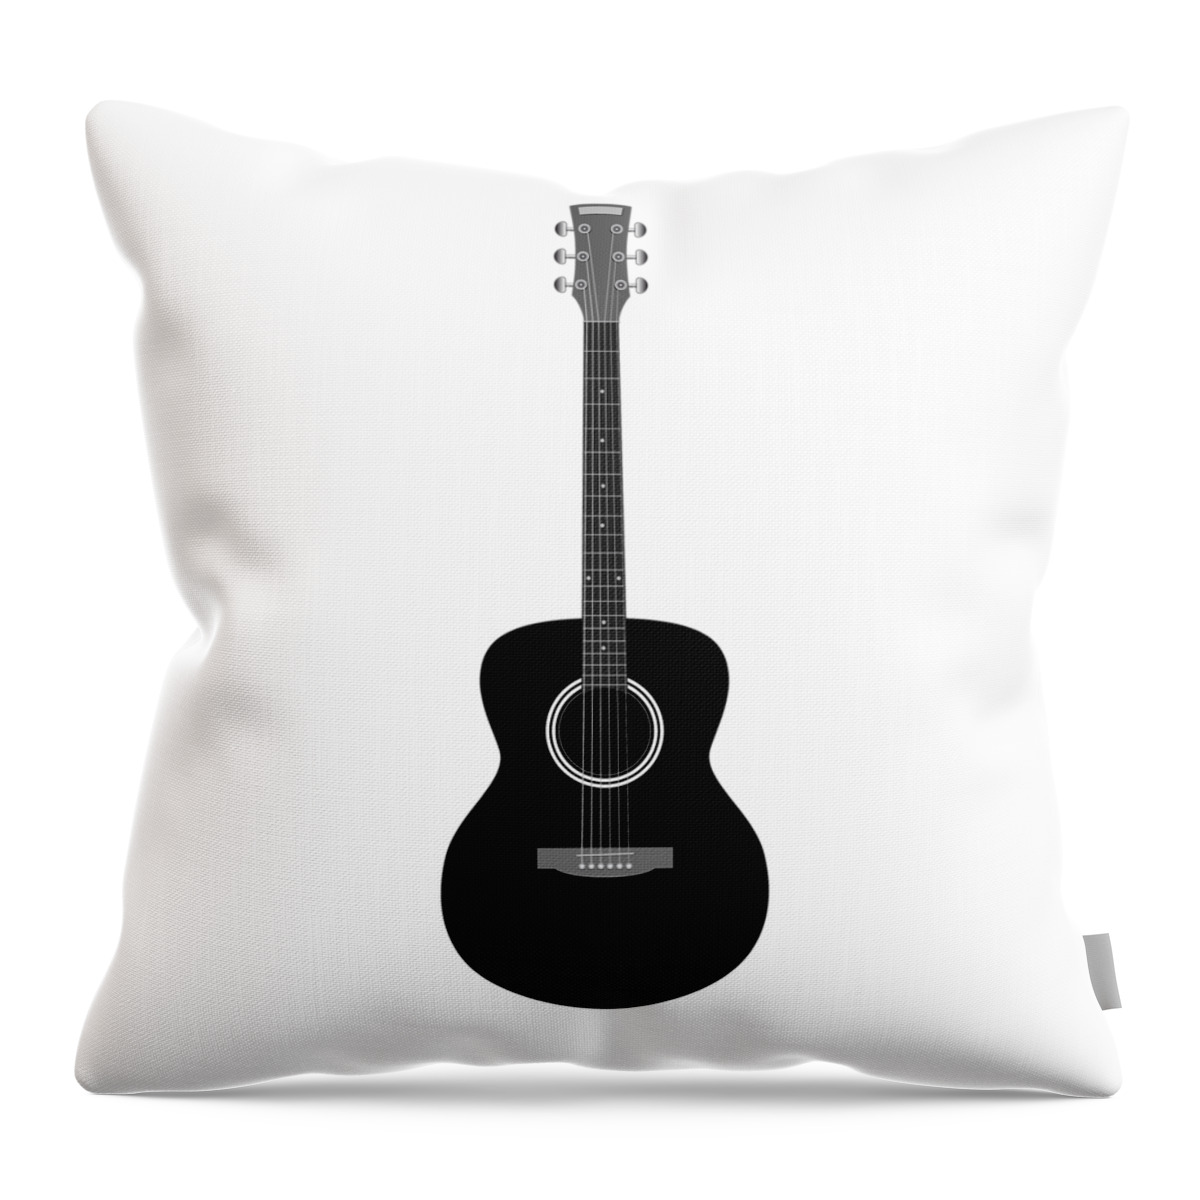 Guitar Throw Pillow featuring the digital art Guitar #5 by Michal Boubin